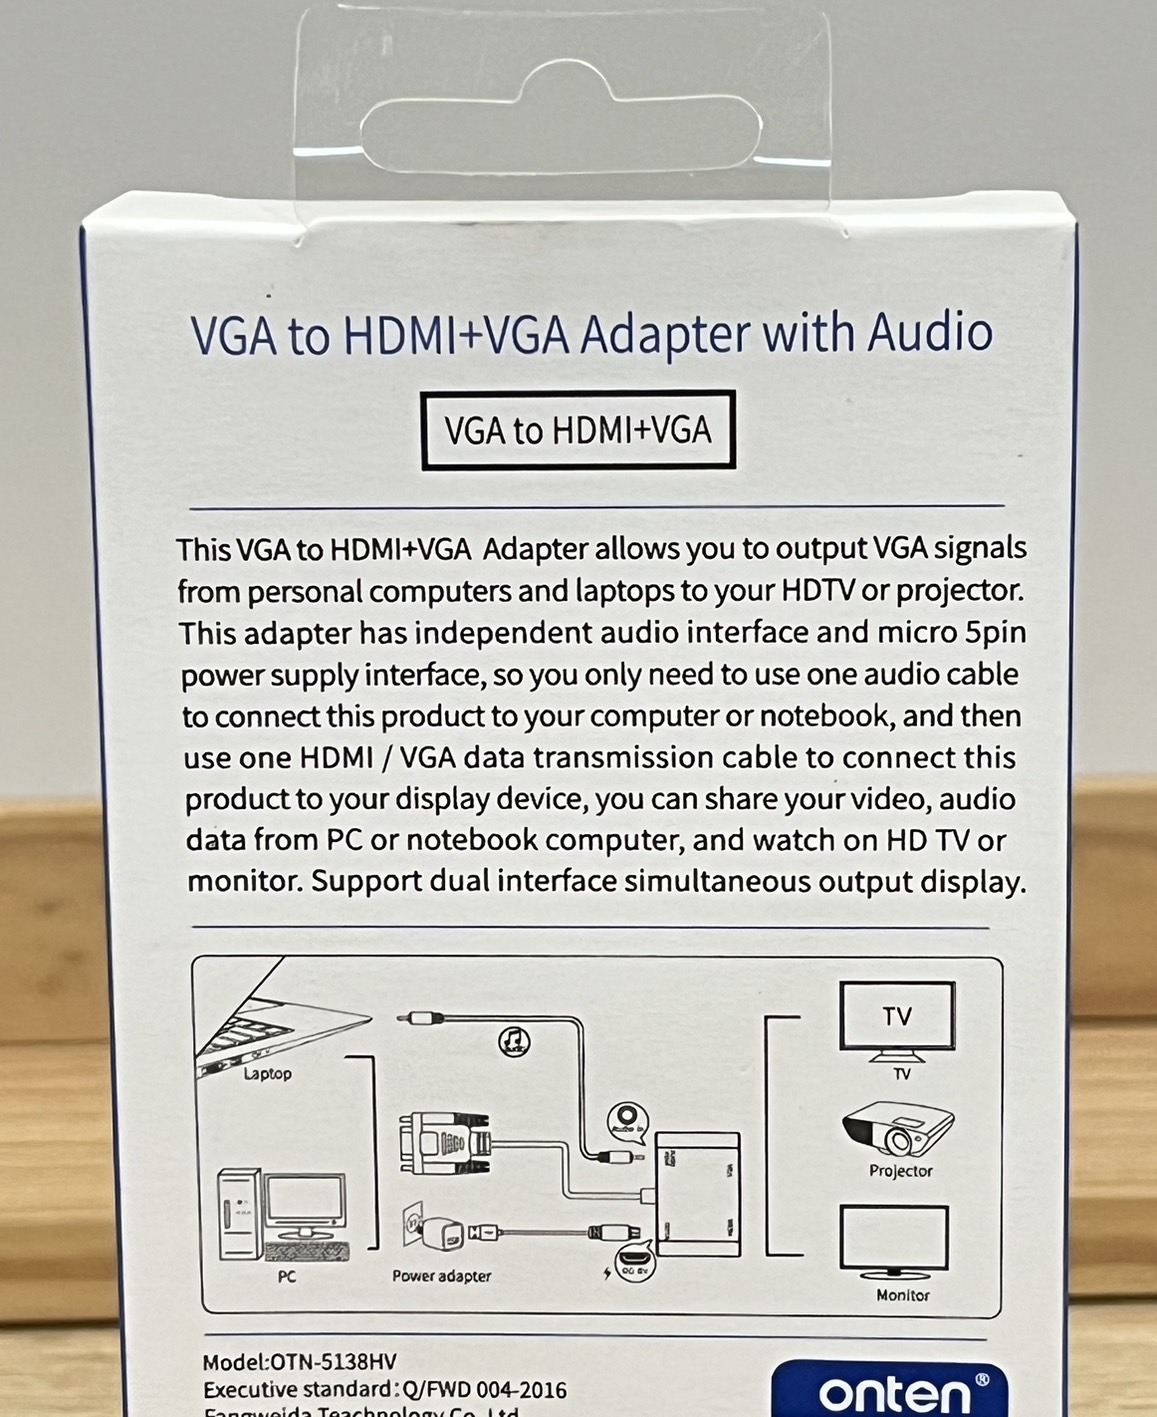 VGA to HDMI+VGA